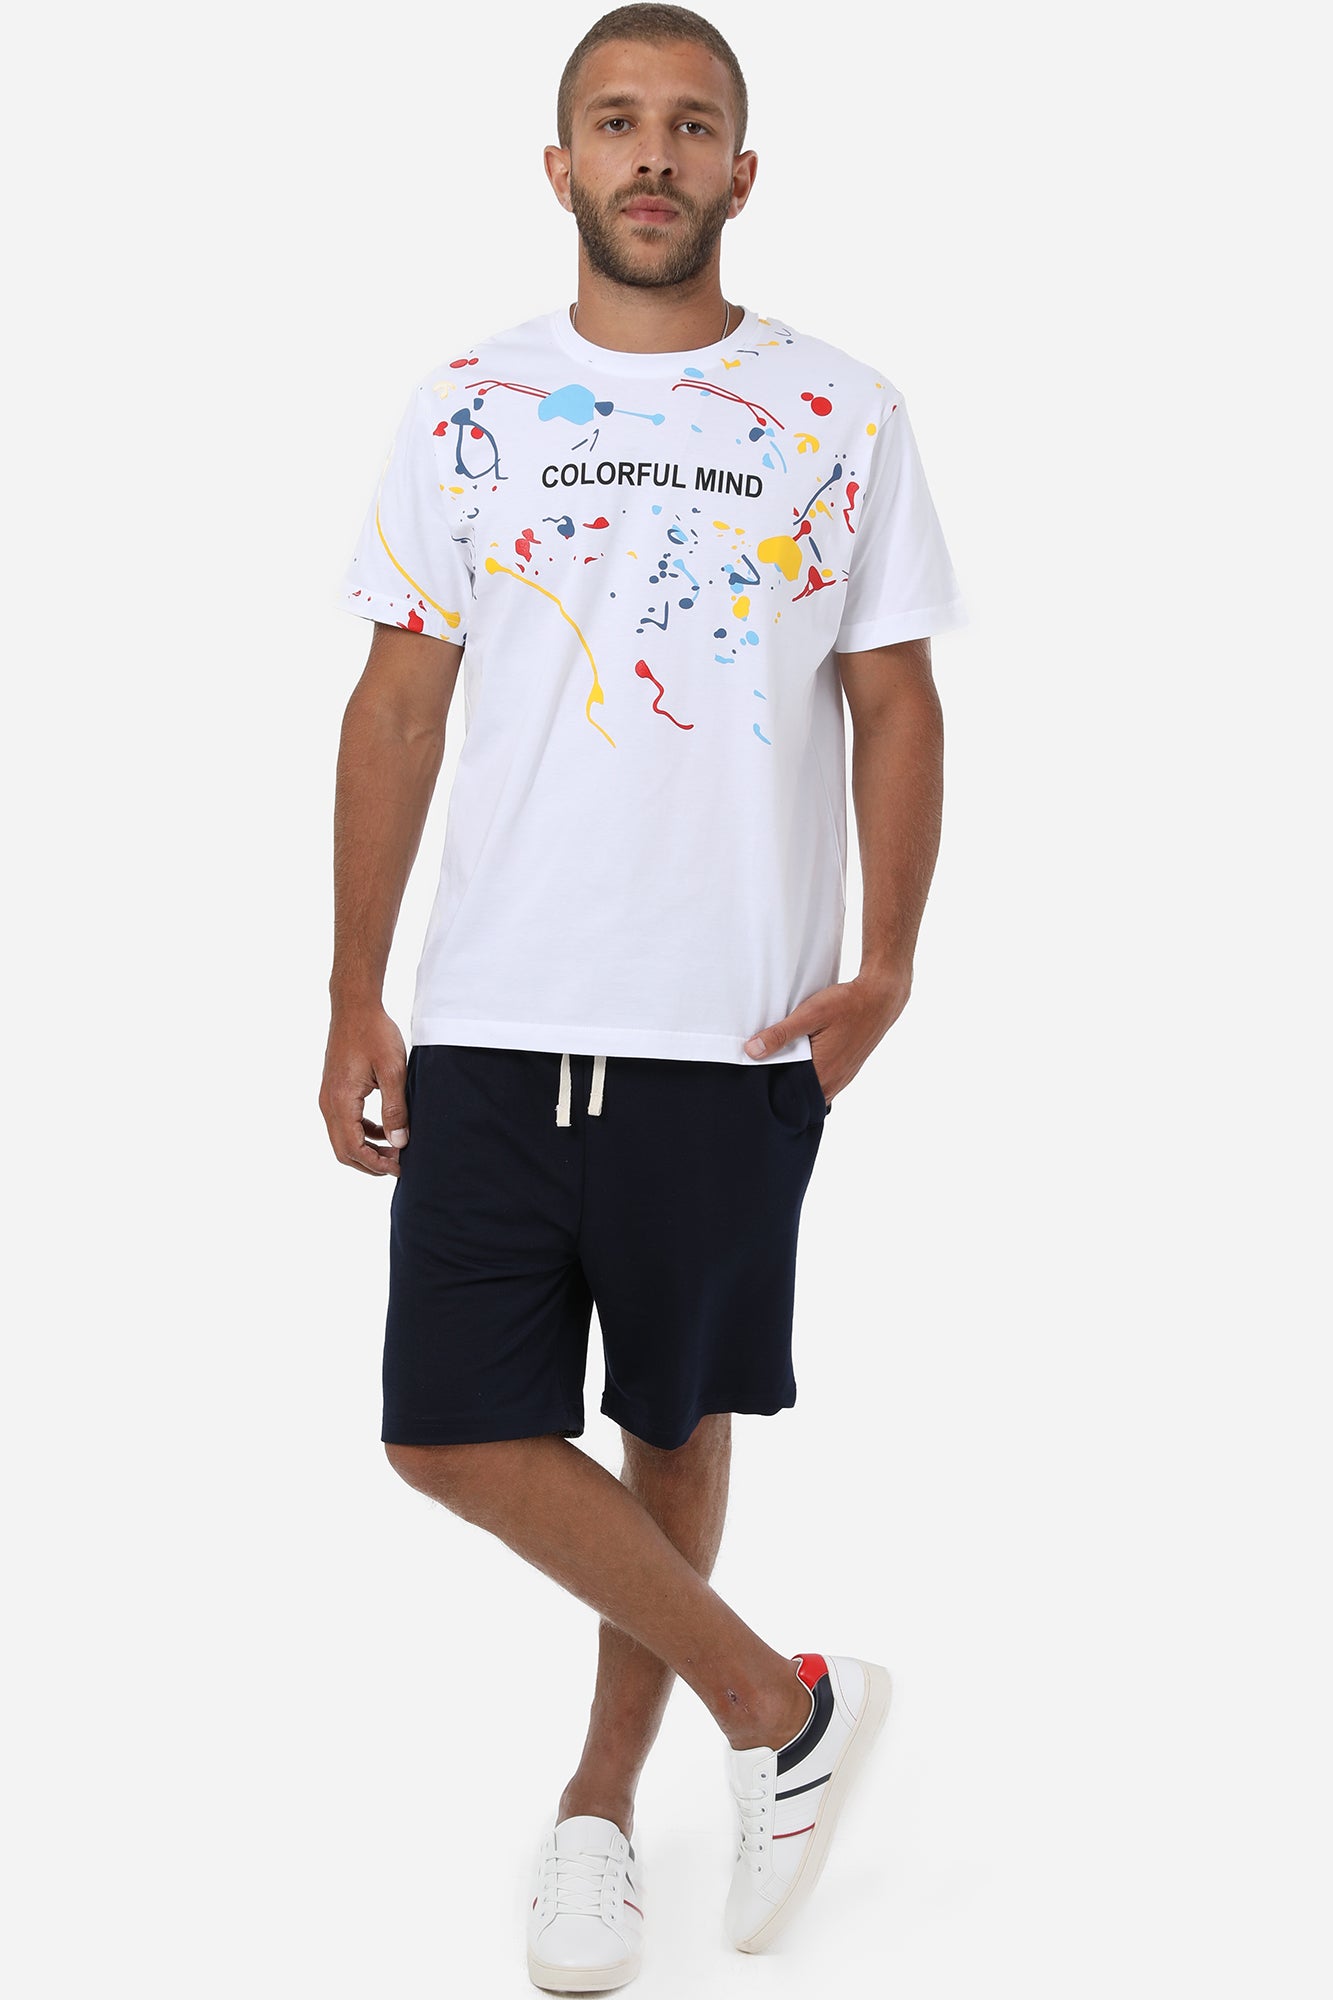 Colorful Mind Tshirt For Men -110704005